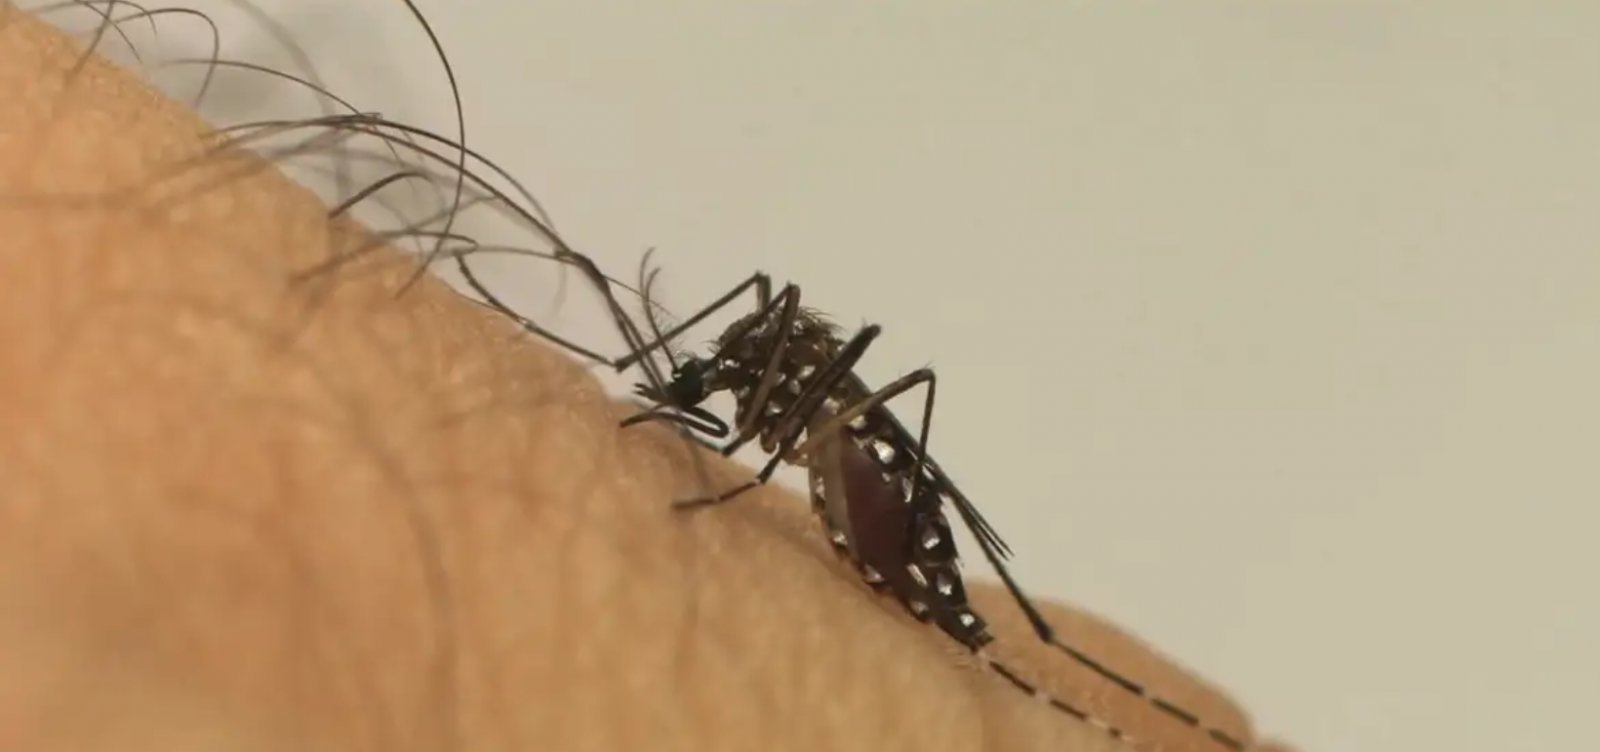 Pico da dengue deve ocorrer até maio, alerta consultor da OMS